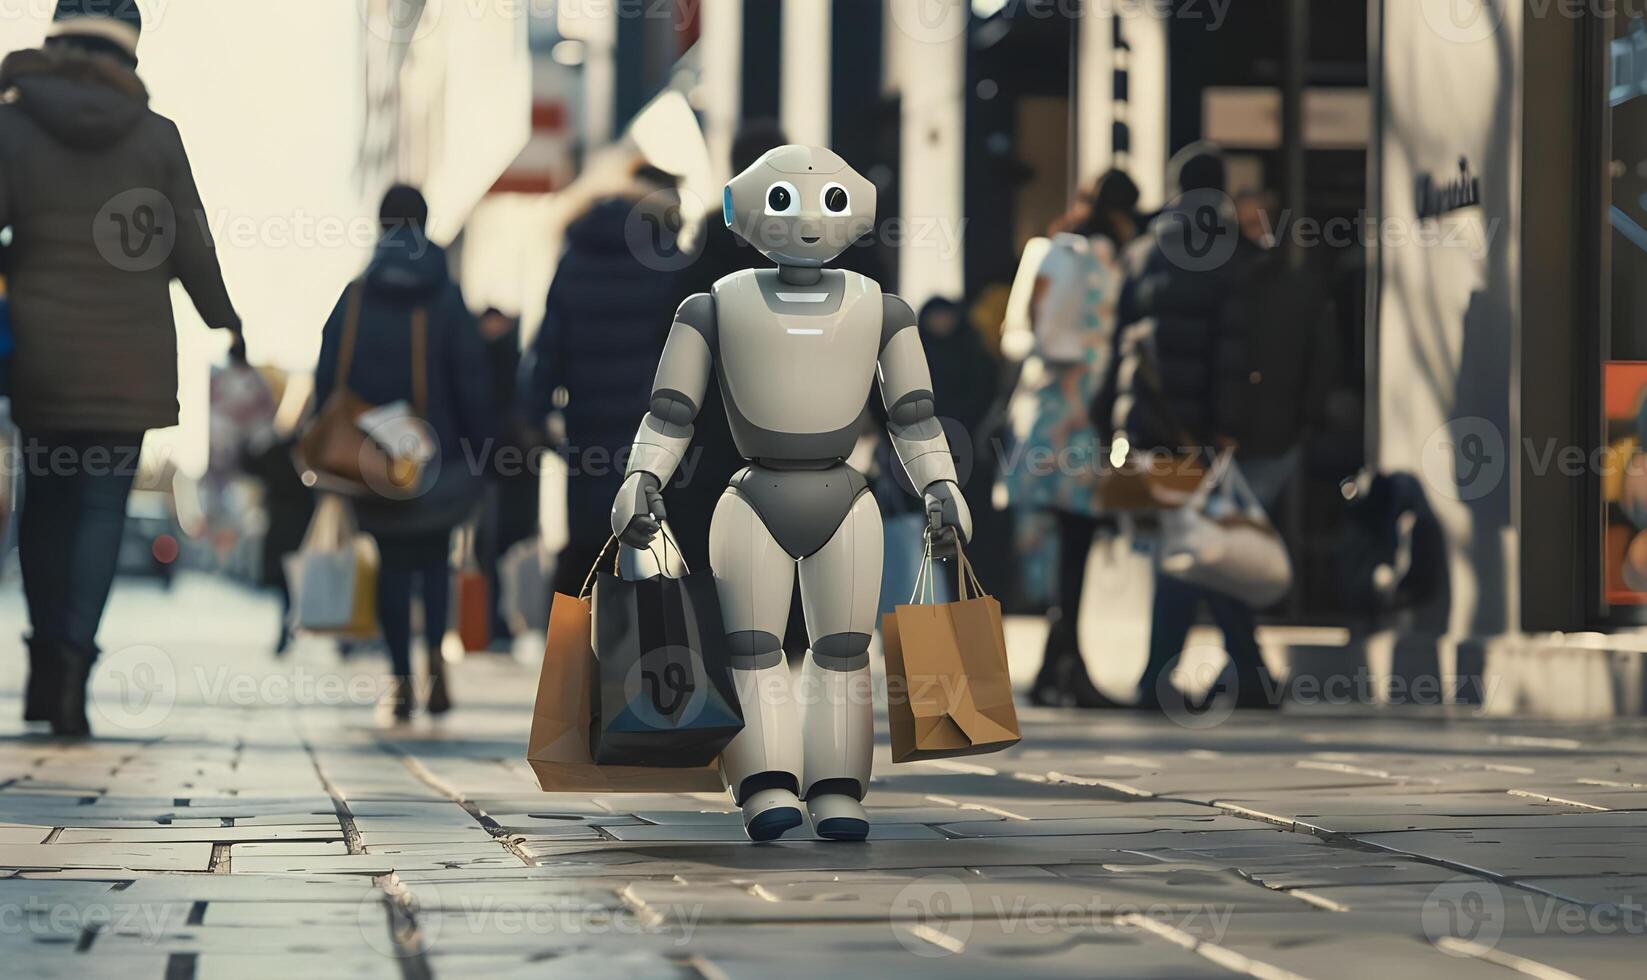 robot vrouw wandelingen met boodschappen doen Tassen. robot met boodschappen doen Tassen wandelingen Aan een straat tussen mensen. een robot wandelingen boodschappen doen Tassen in een afdeling op te slaan. foto